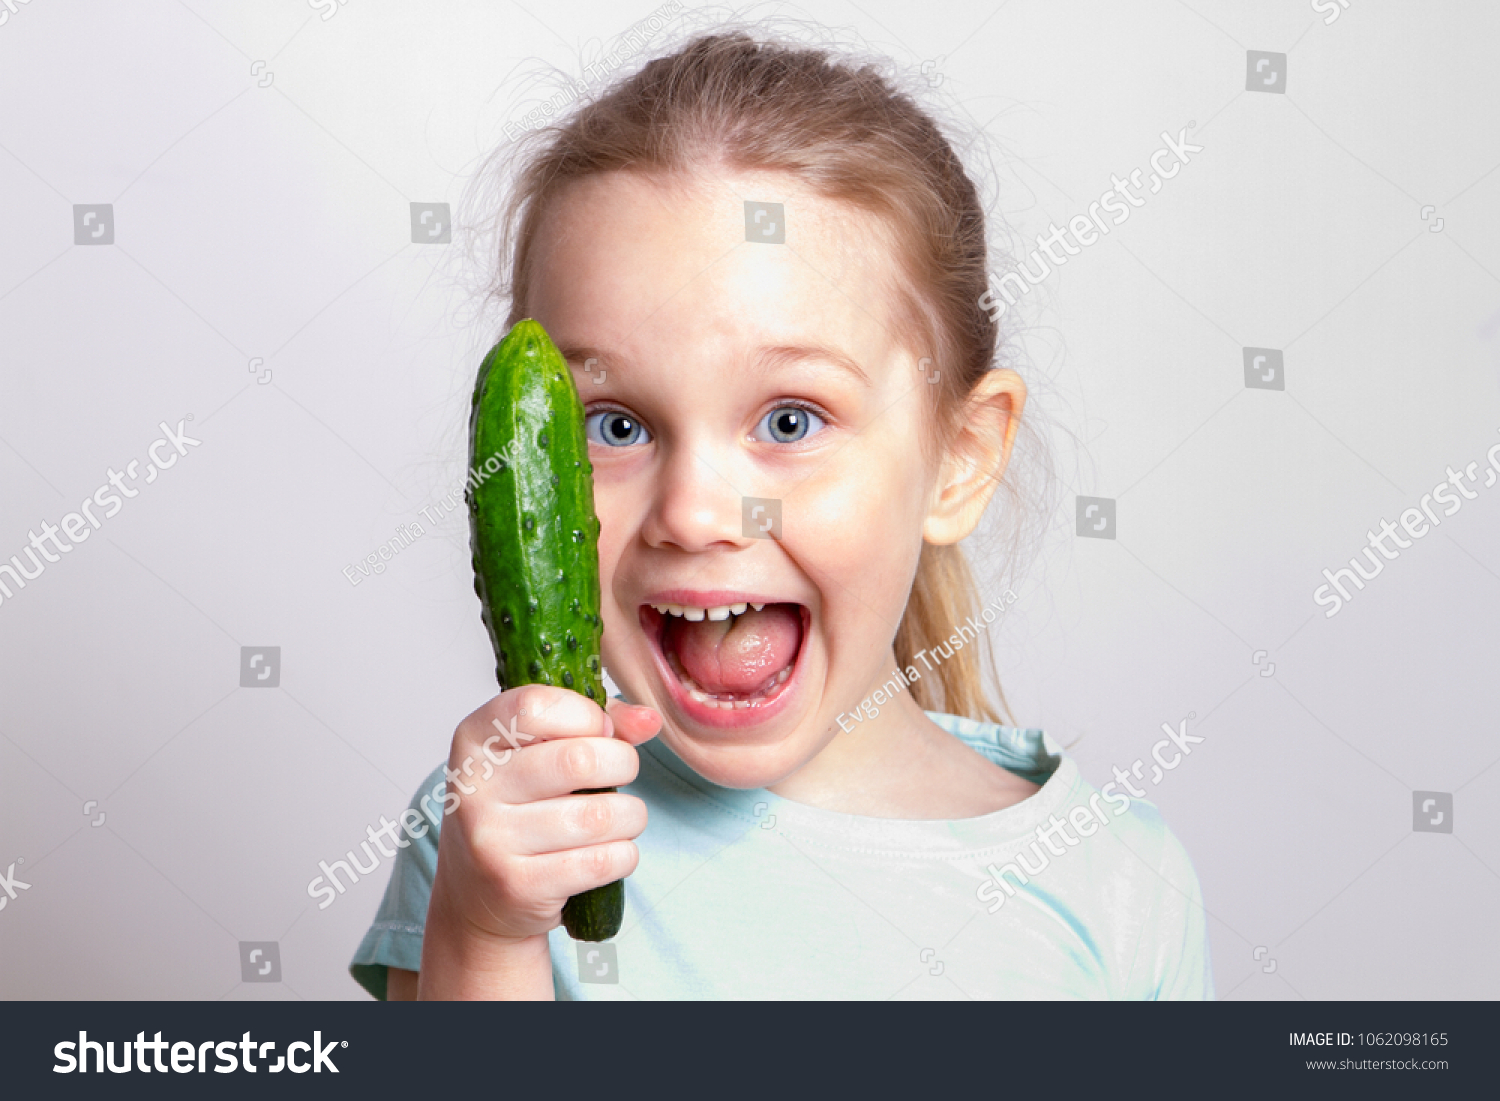 Light skin girl sucks cucumber like